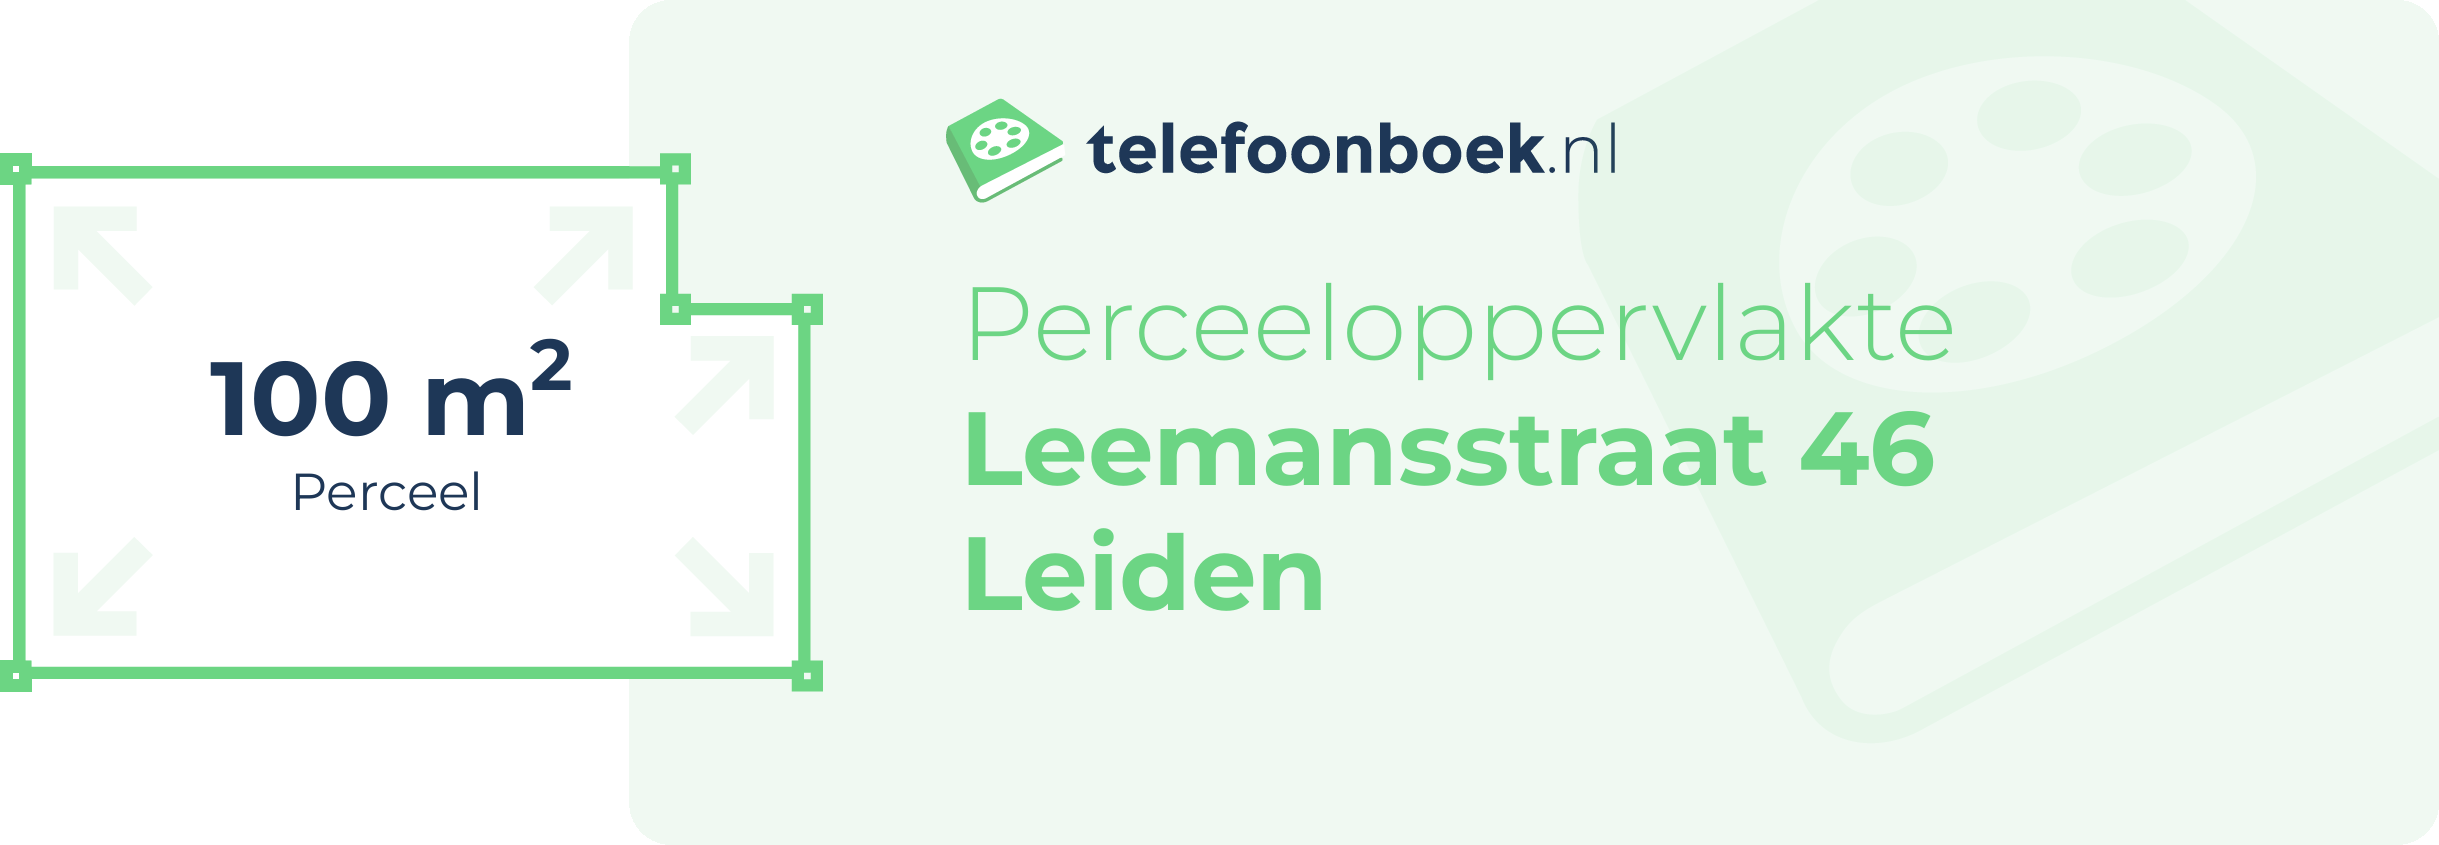 Perceeloppervlakte Leemansstraat 46 Leiden